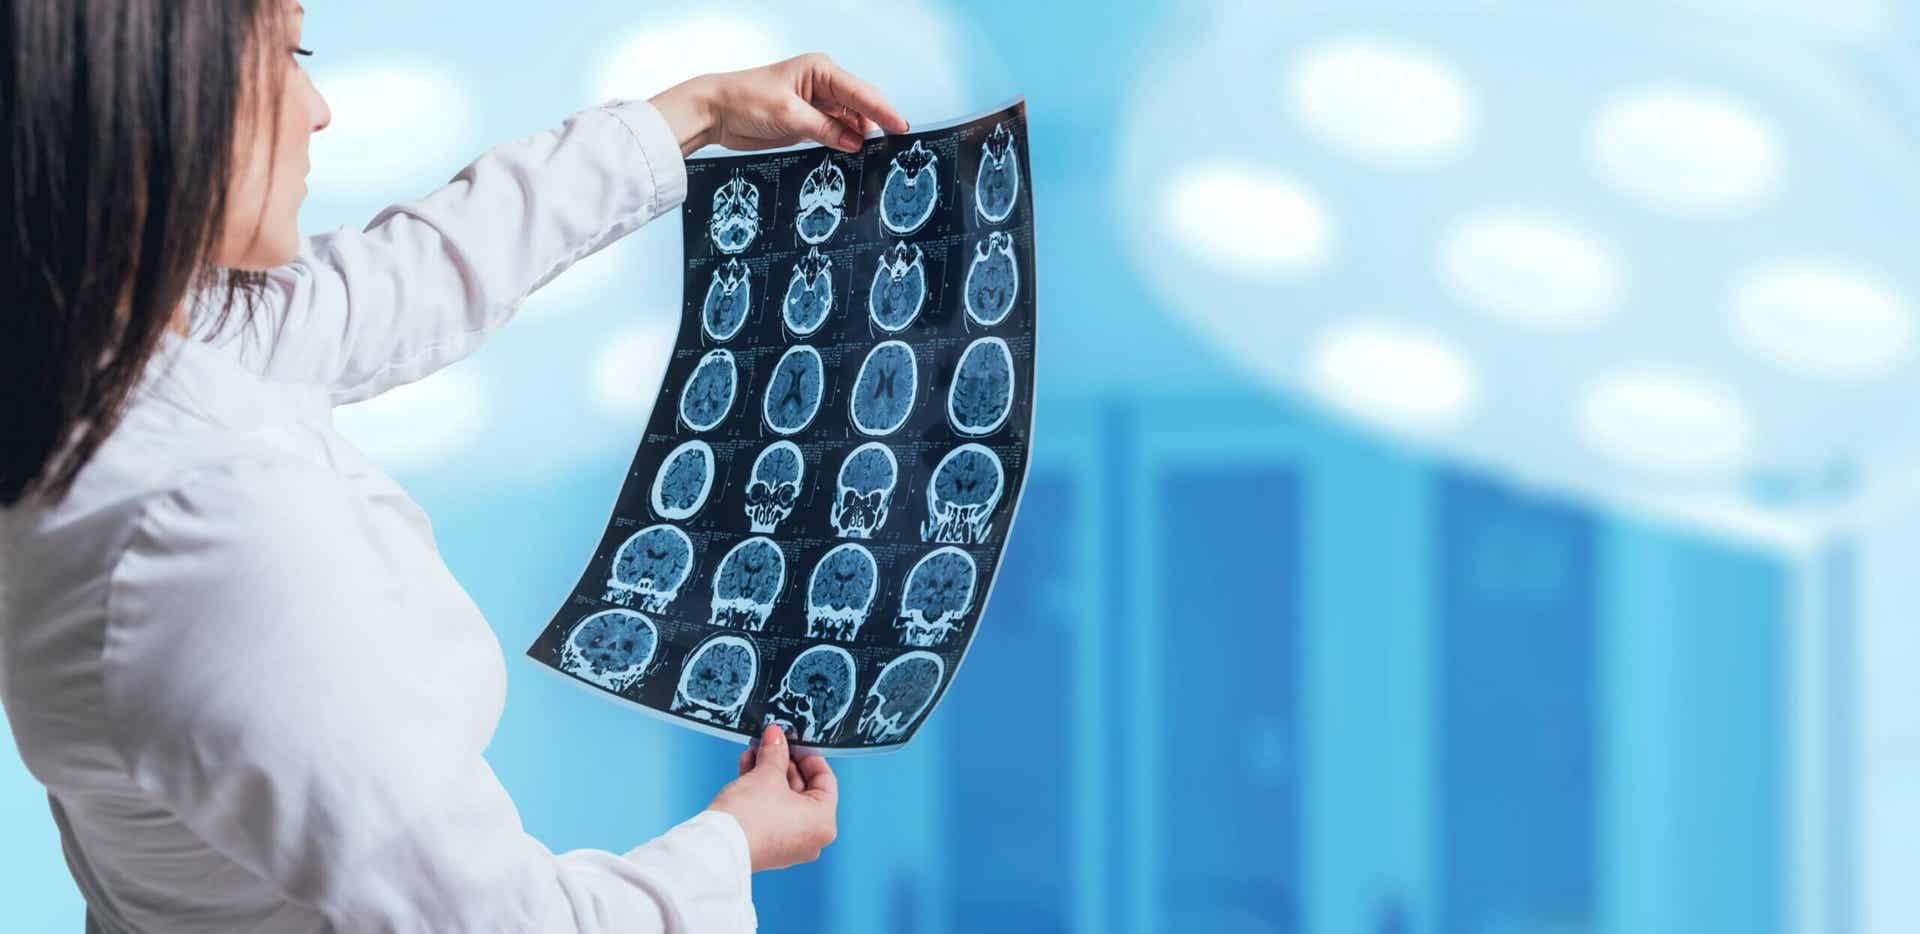 Angiografía cerebral: características, preparación y riesgos de la prueba